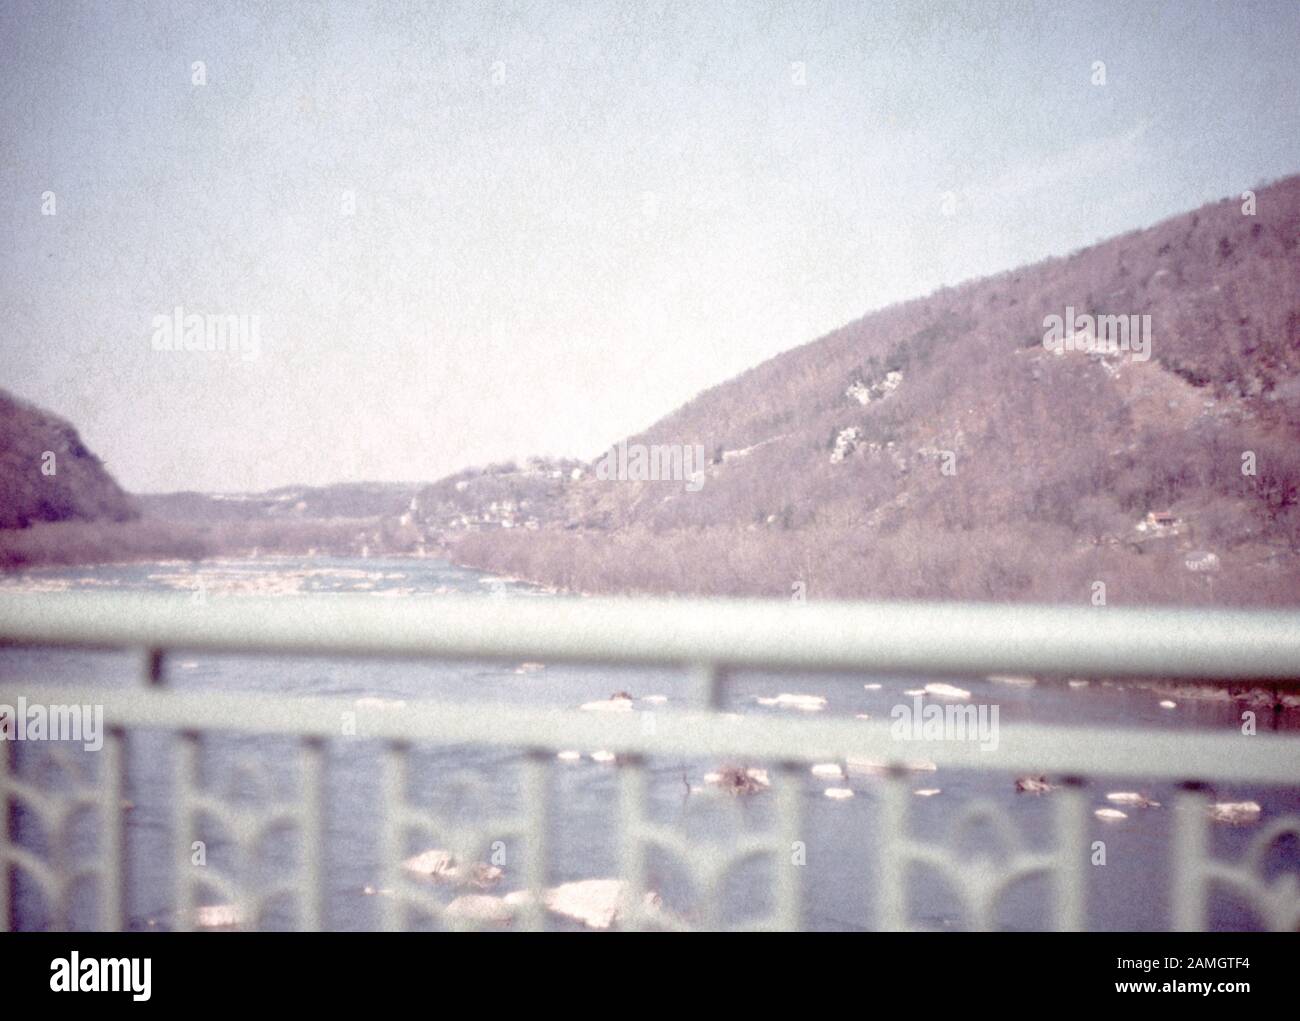 Fotografia vernacolare presa su una trasparenza di pellicola analogica 35mm, creduto per descrivere la recinzione di metallo bianca vicino al corpo di acqua durante il giorno, 1965. Gli argomenti/oggetti principali rilevati includono Sky, Mountain, Nature e Gray Color. () Foto Stock